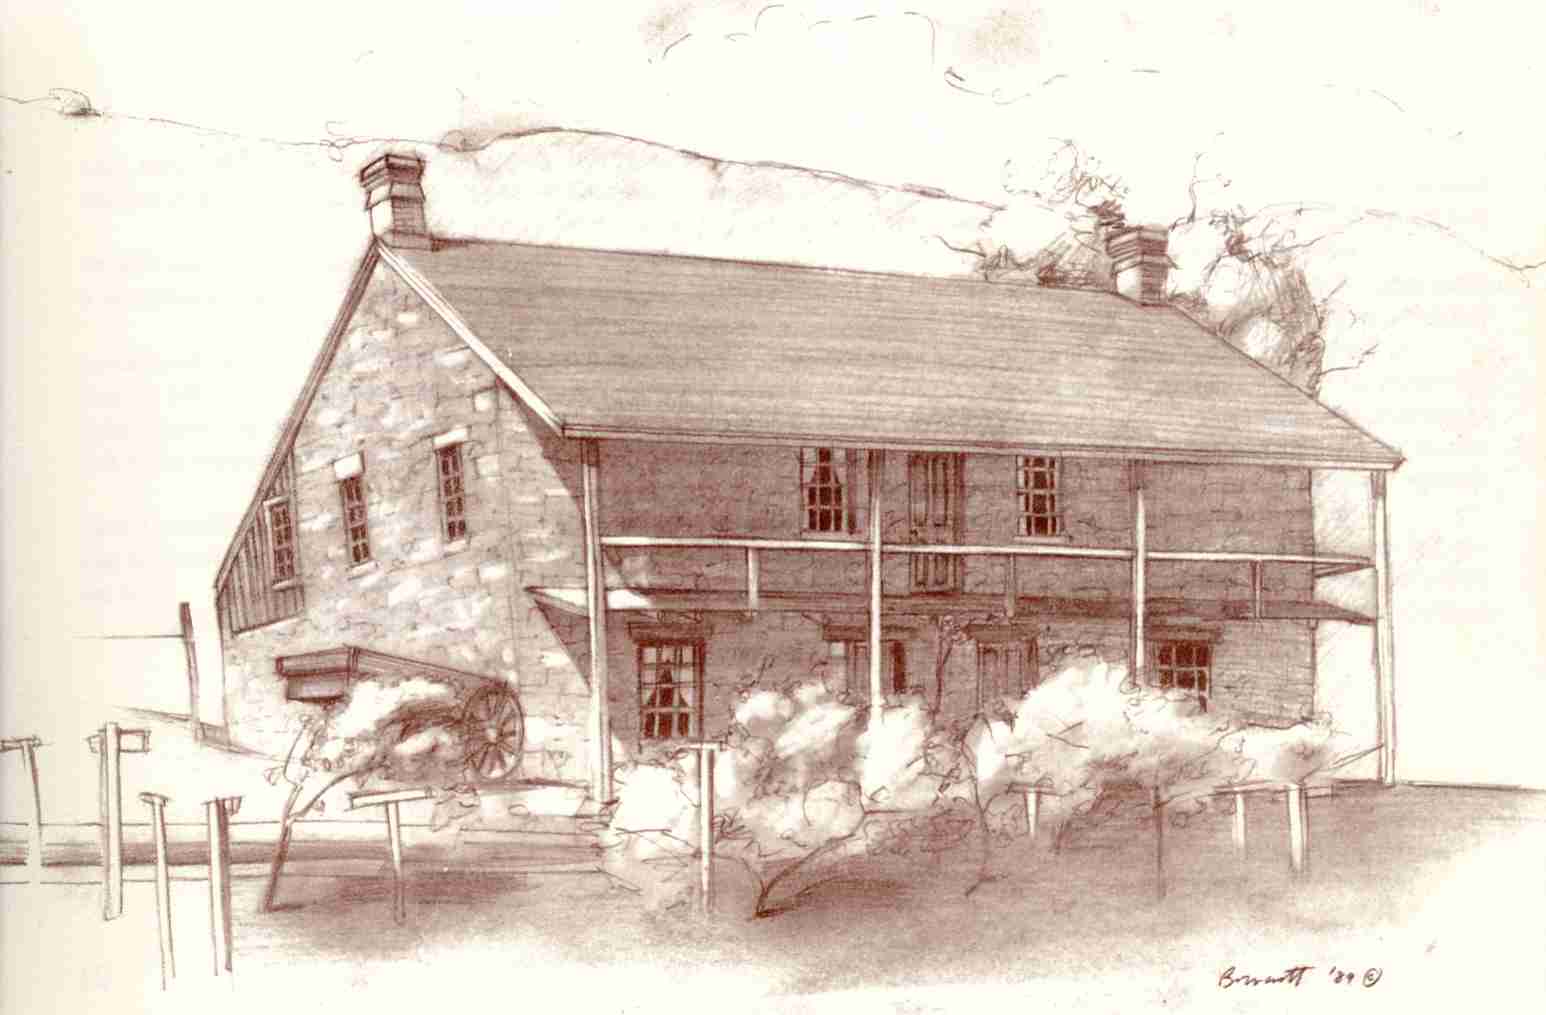 Sketch of the Jacob Hamblin Home